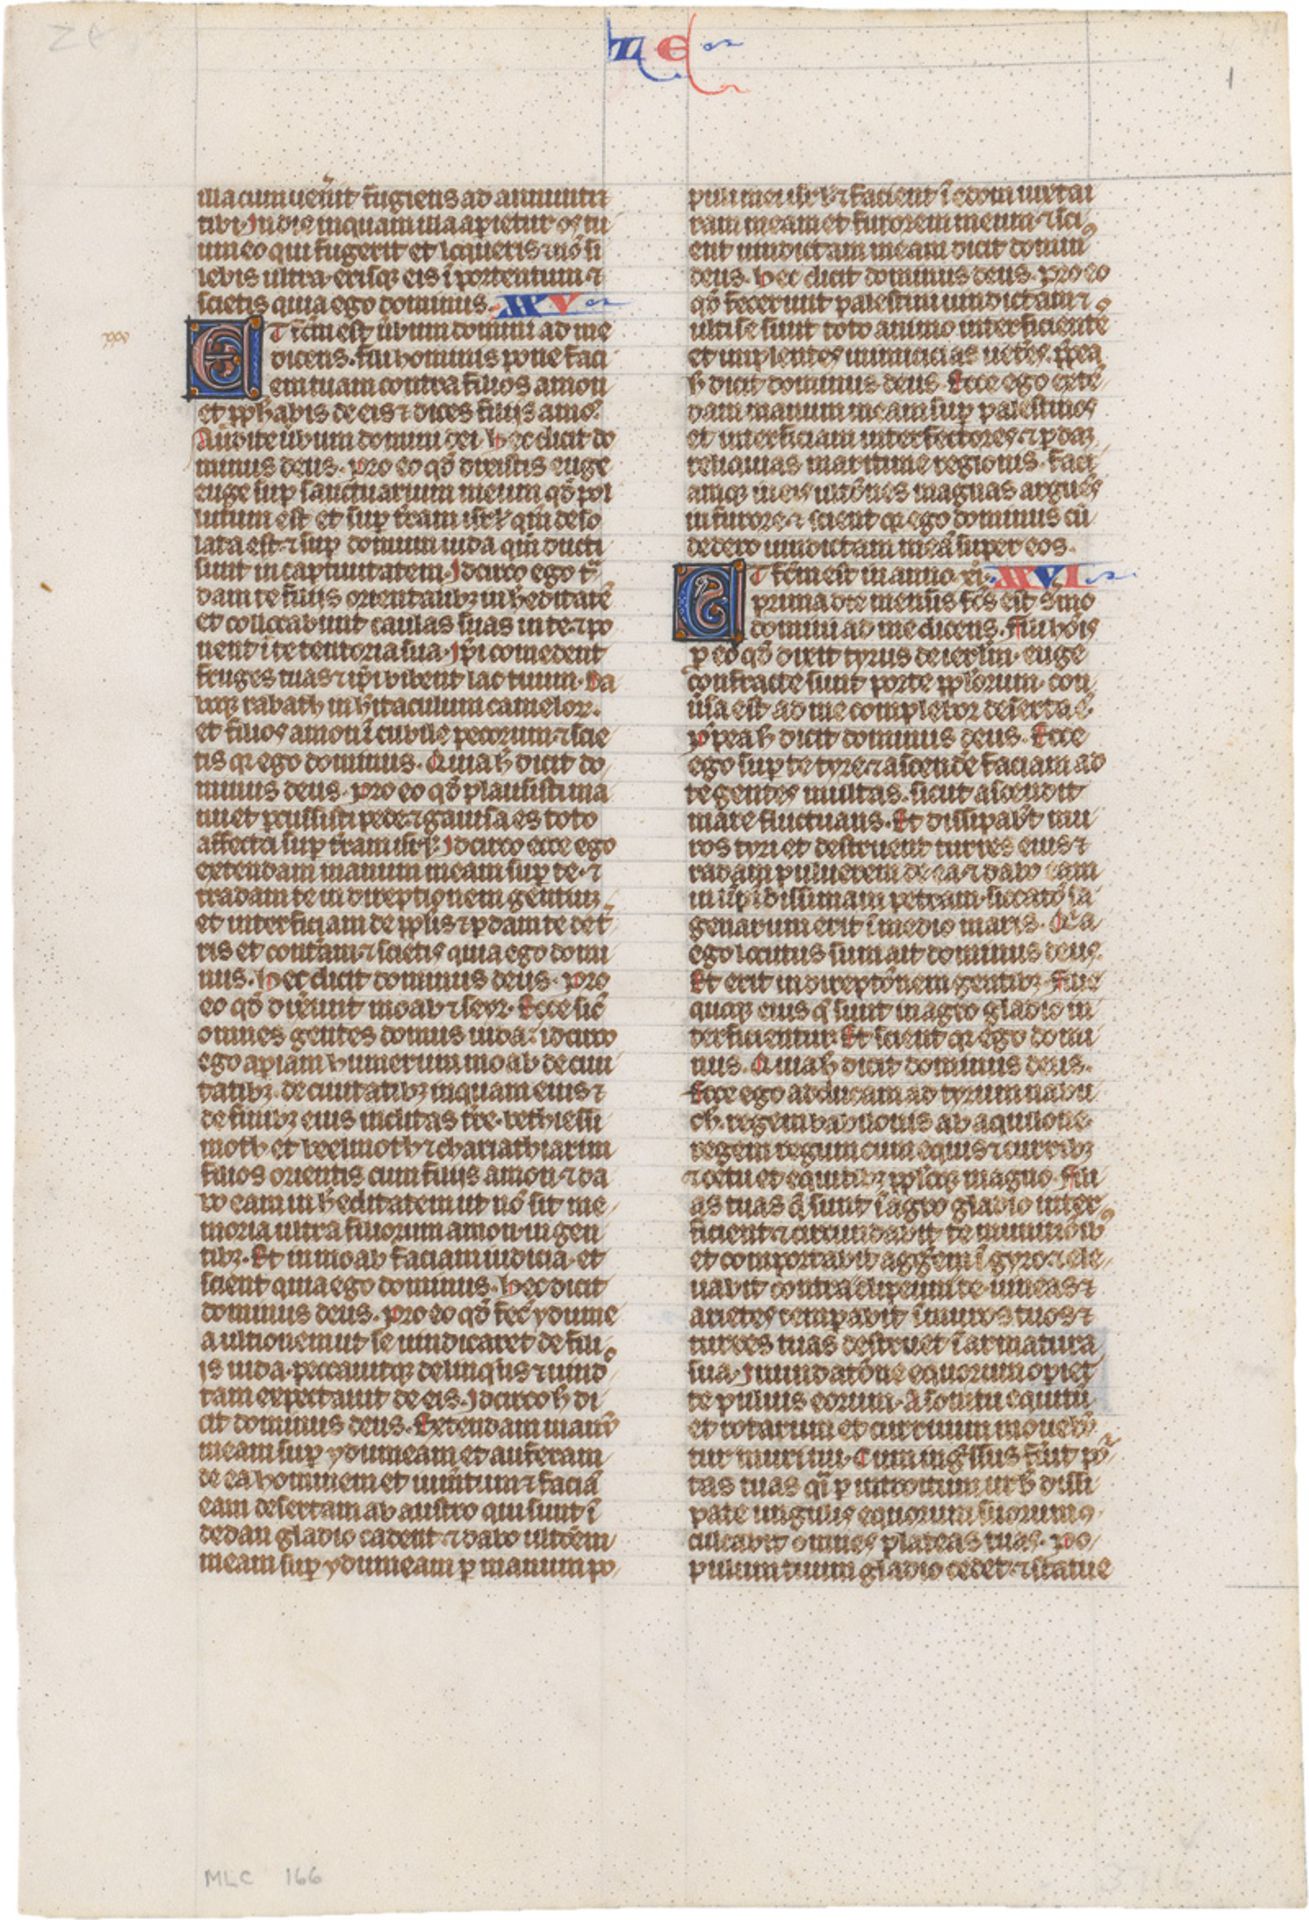 Chester Beatty Bible: Lateinische Handschrift auf Pergament